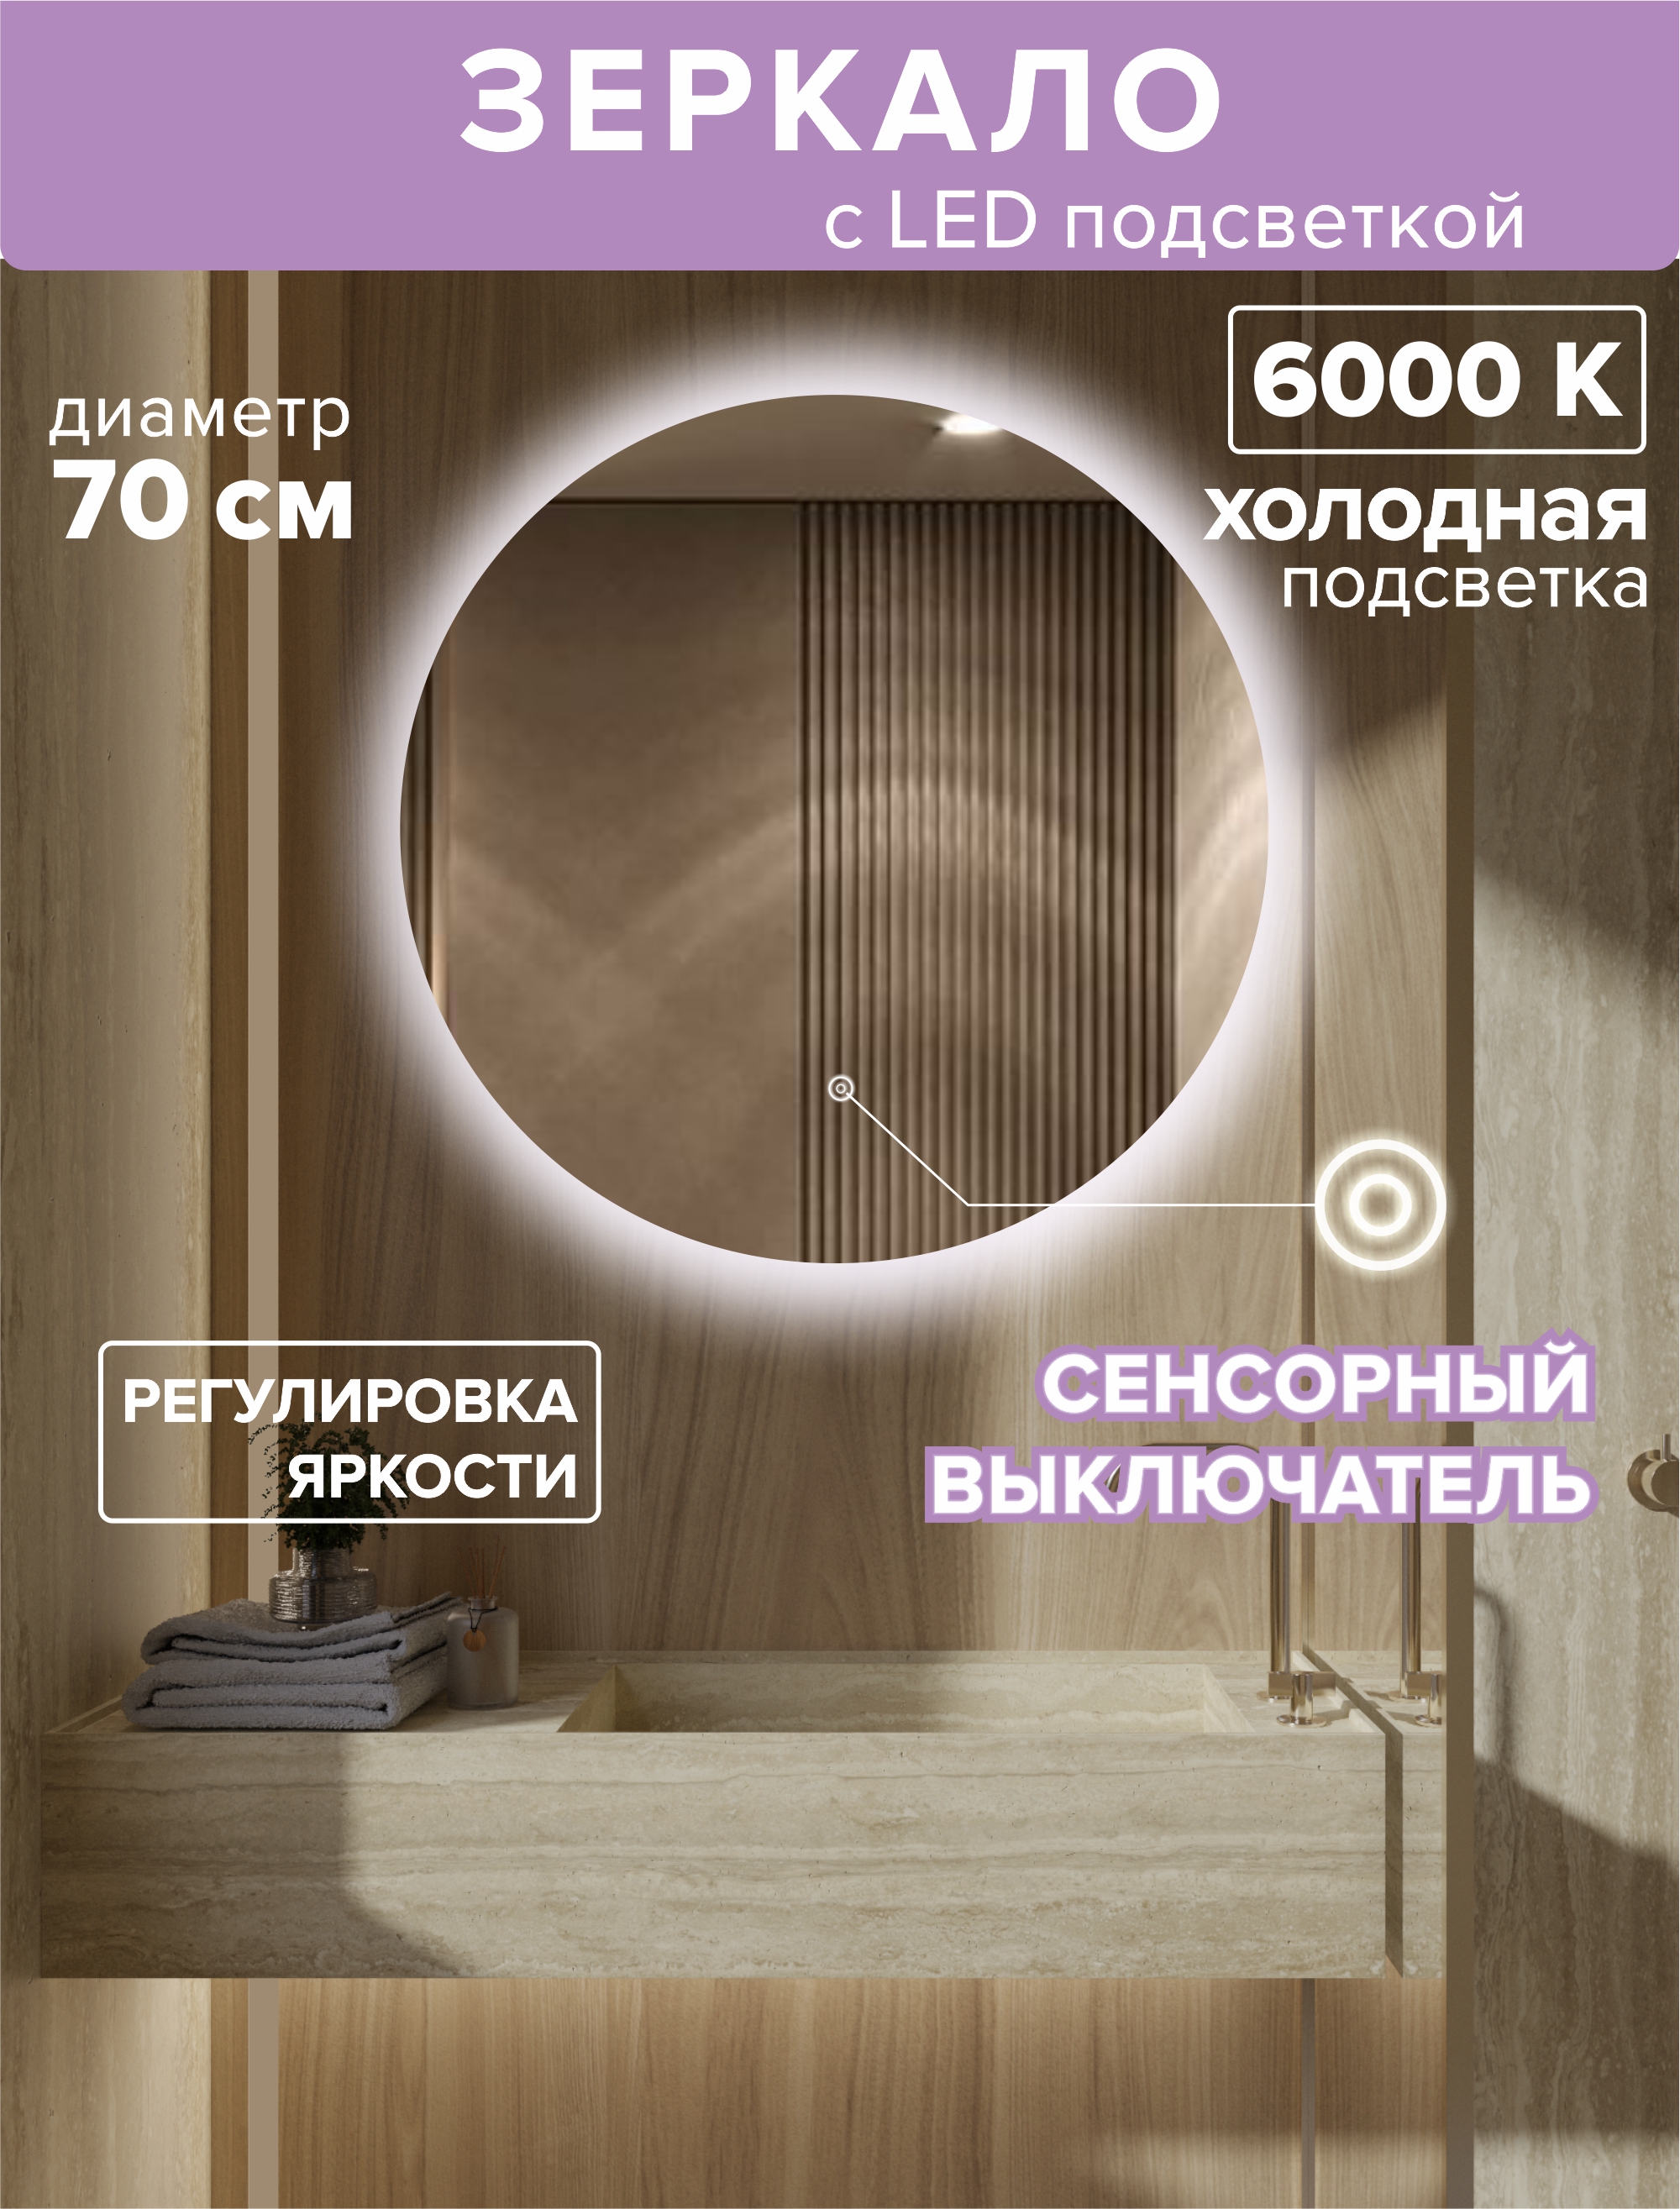 Зеркало с подсветкой круглое 70см. Подсветка холодная (6500К) подсветка для зеркал st luce mareto sl446 411 01